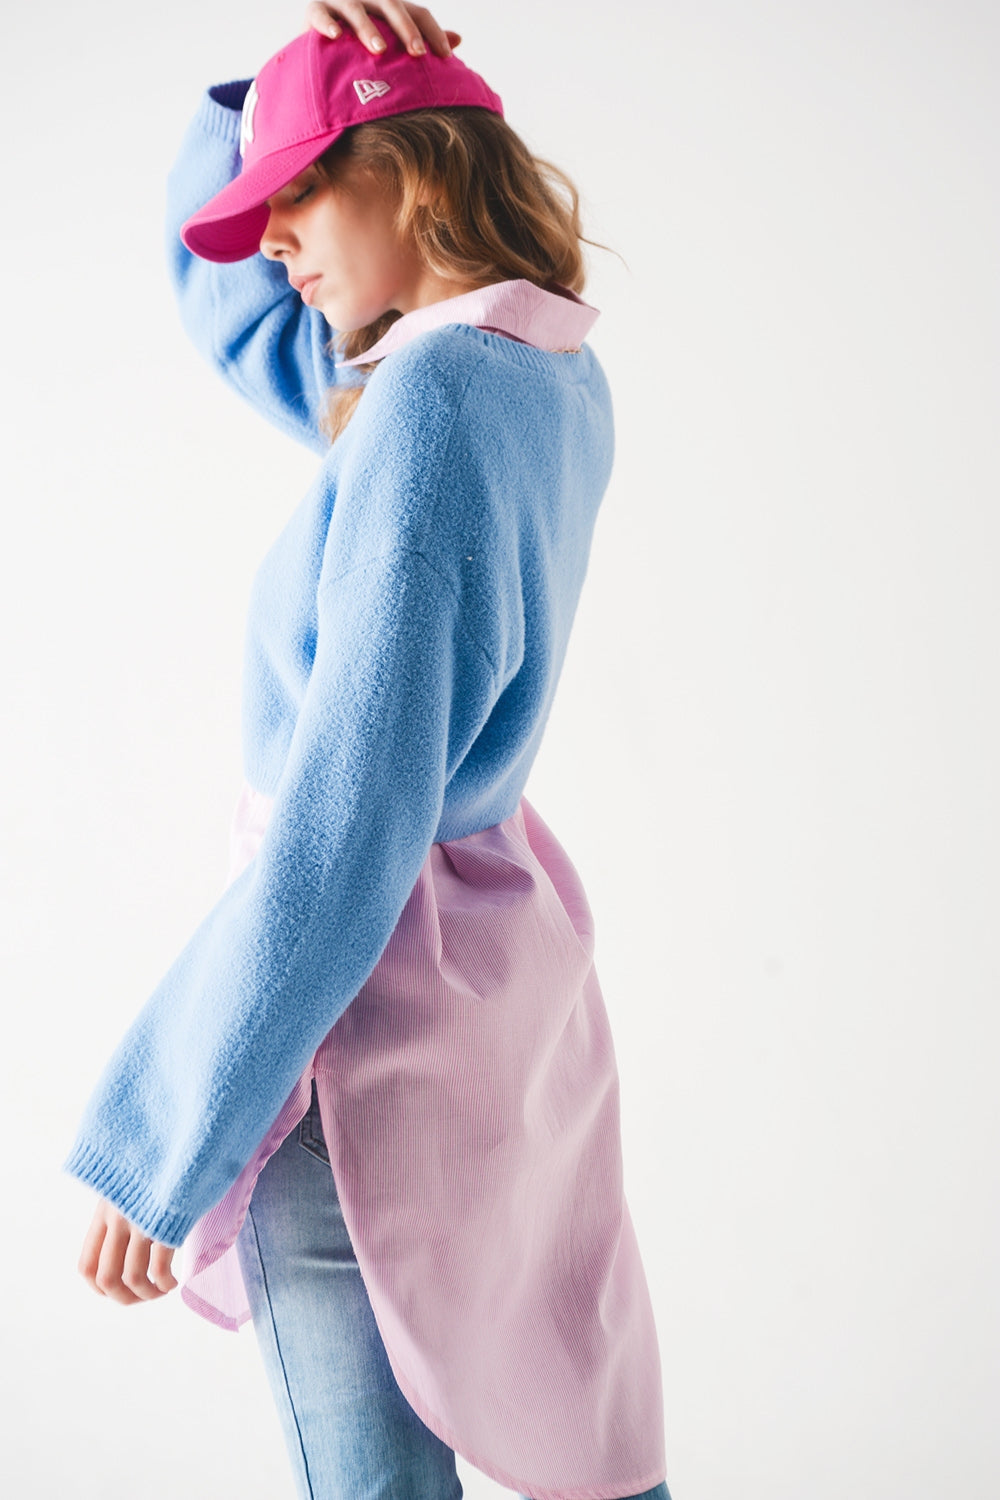 Maglione corto color azzurro in maglia soffice